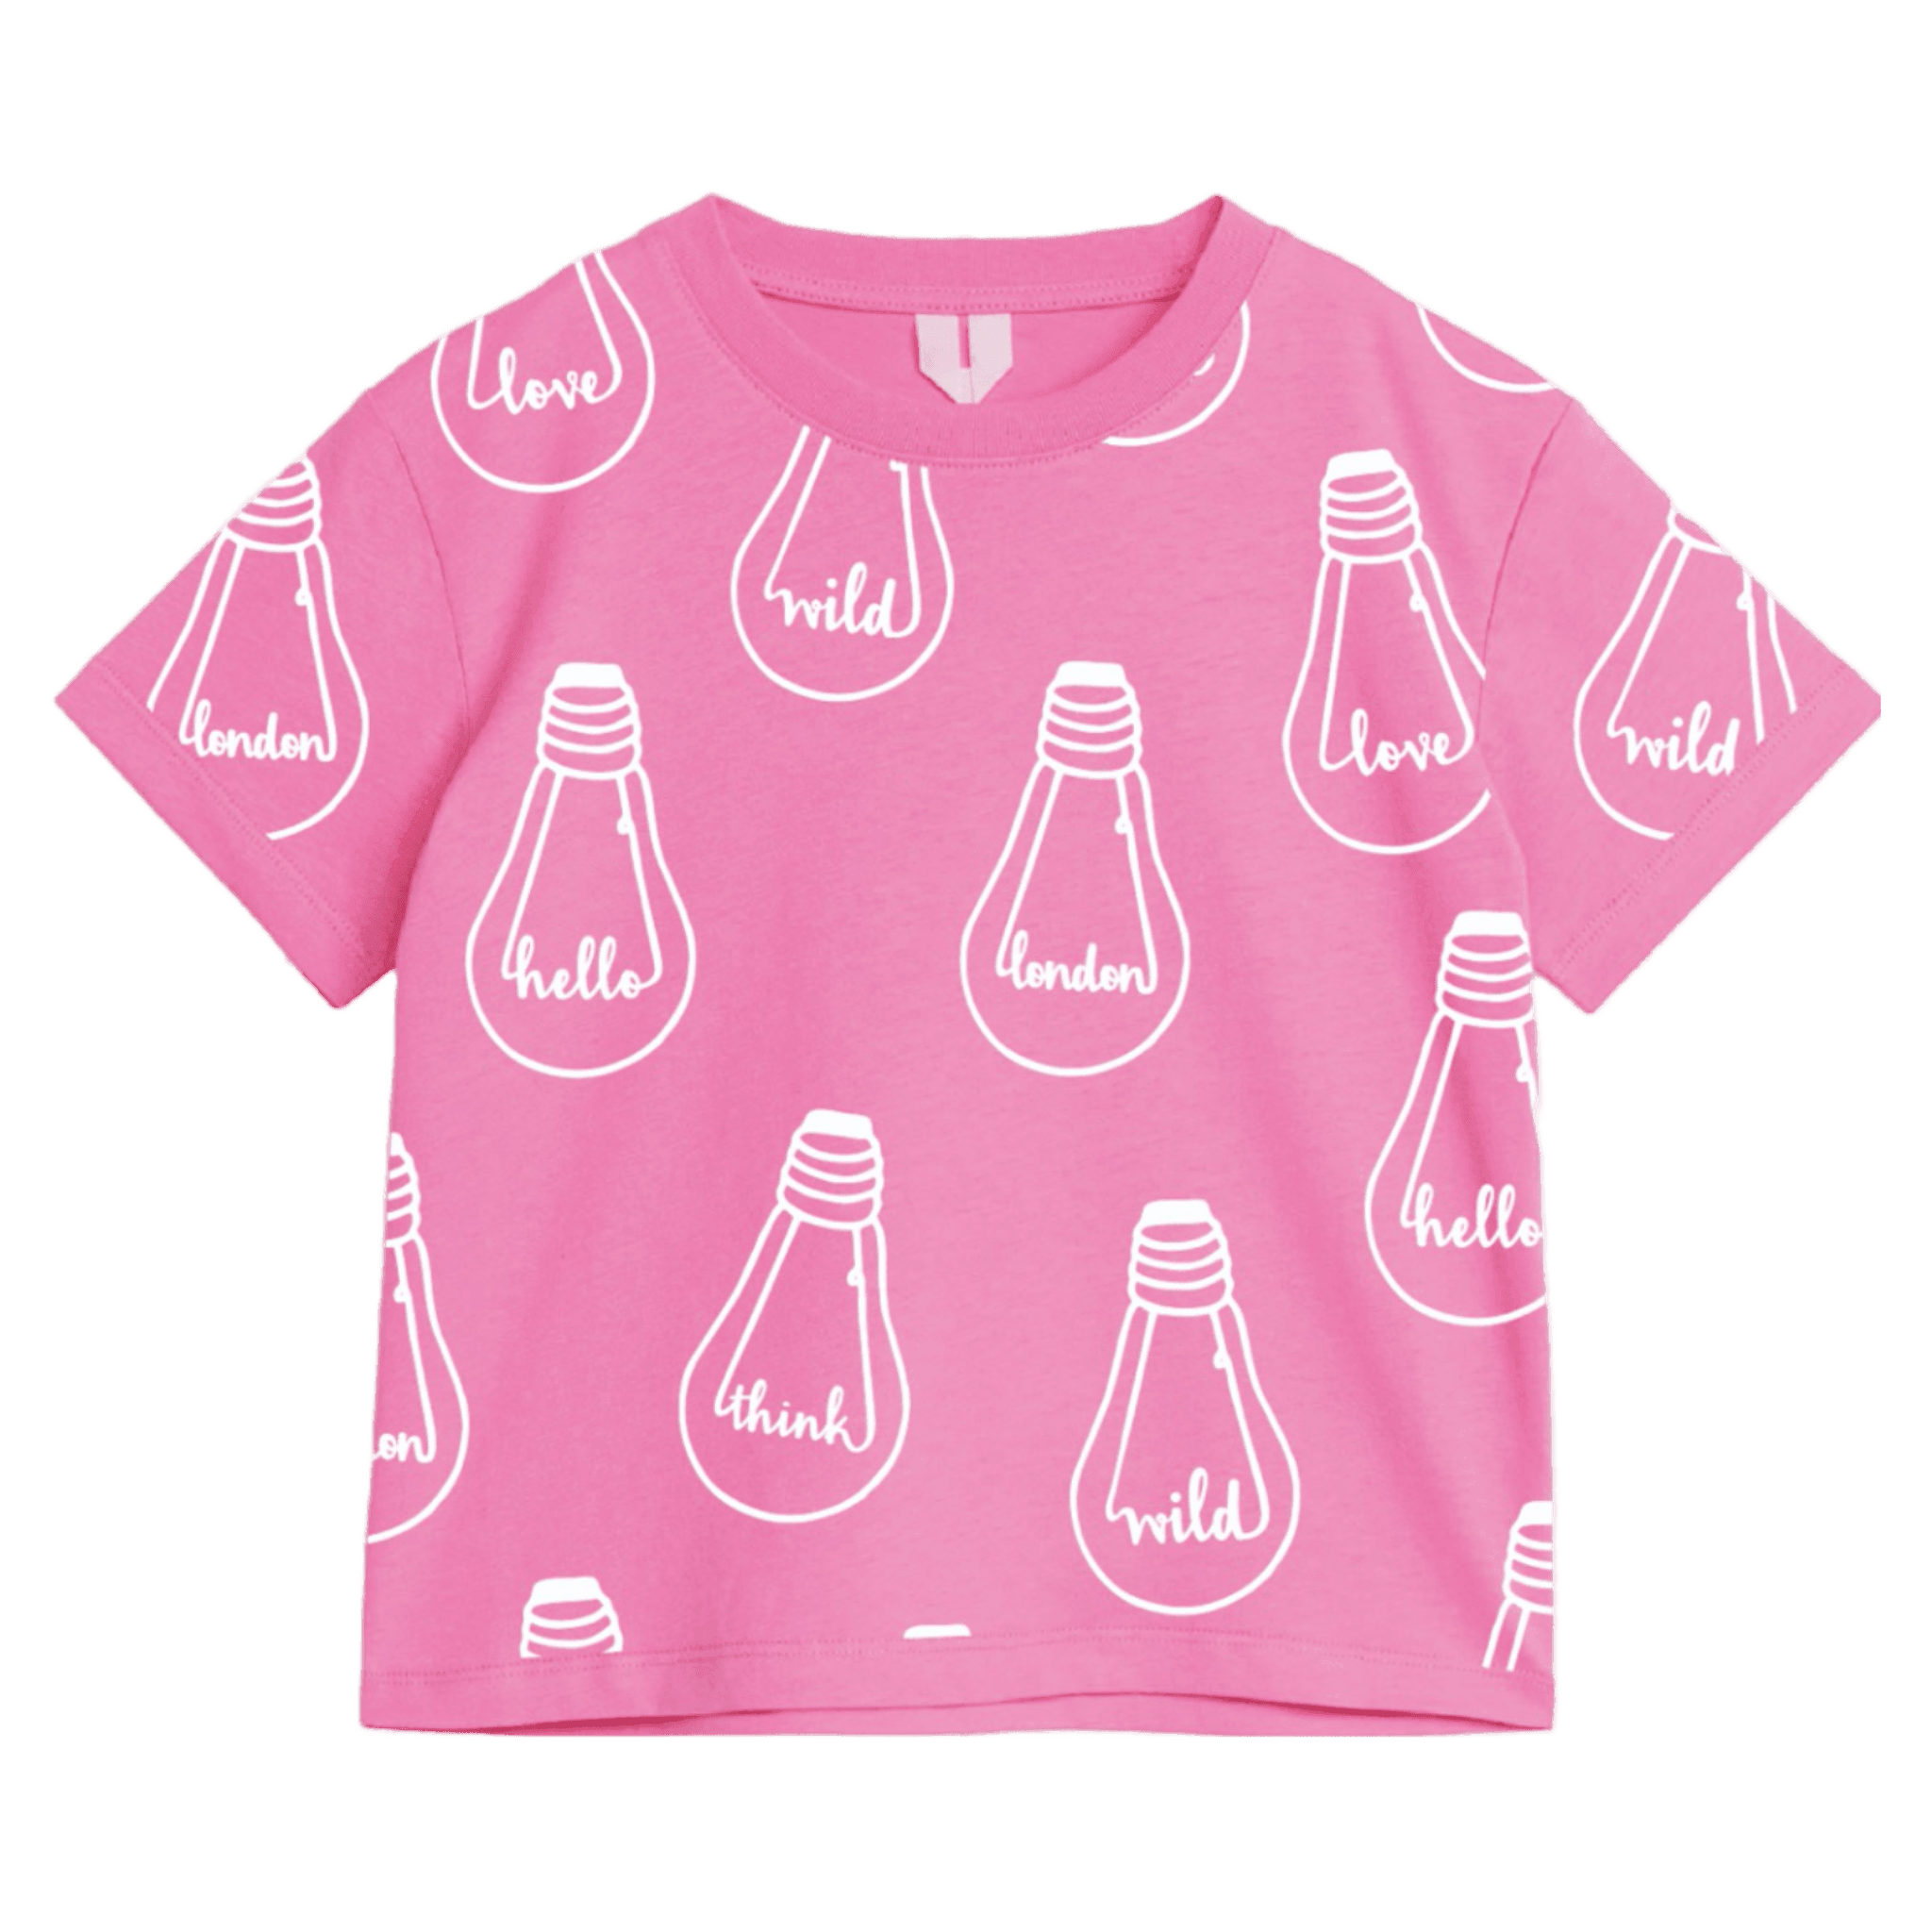 Bulb&#39; T-shirt Pink - Bulb London Studio